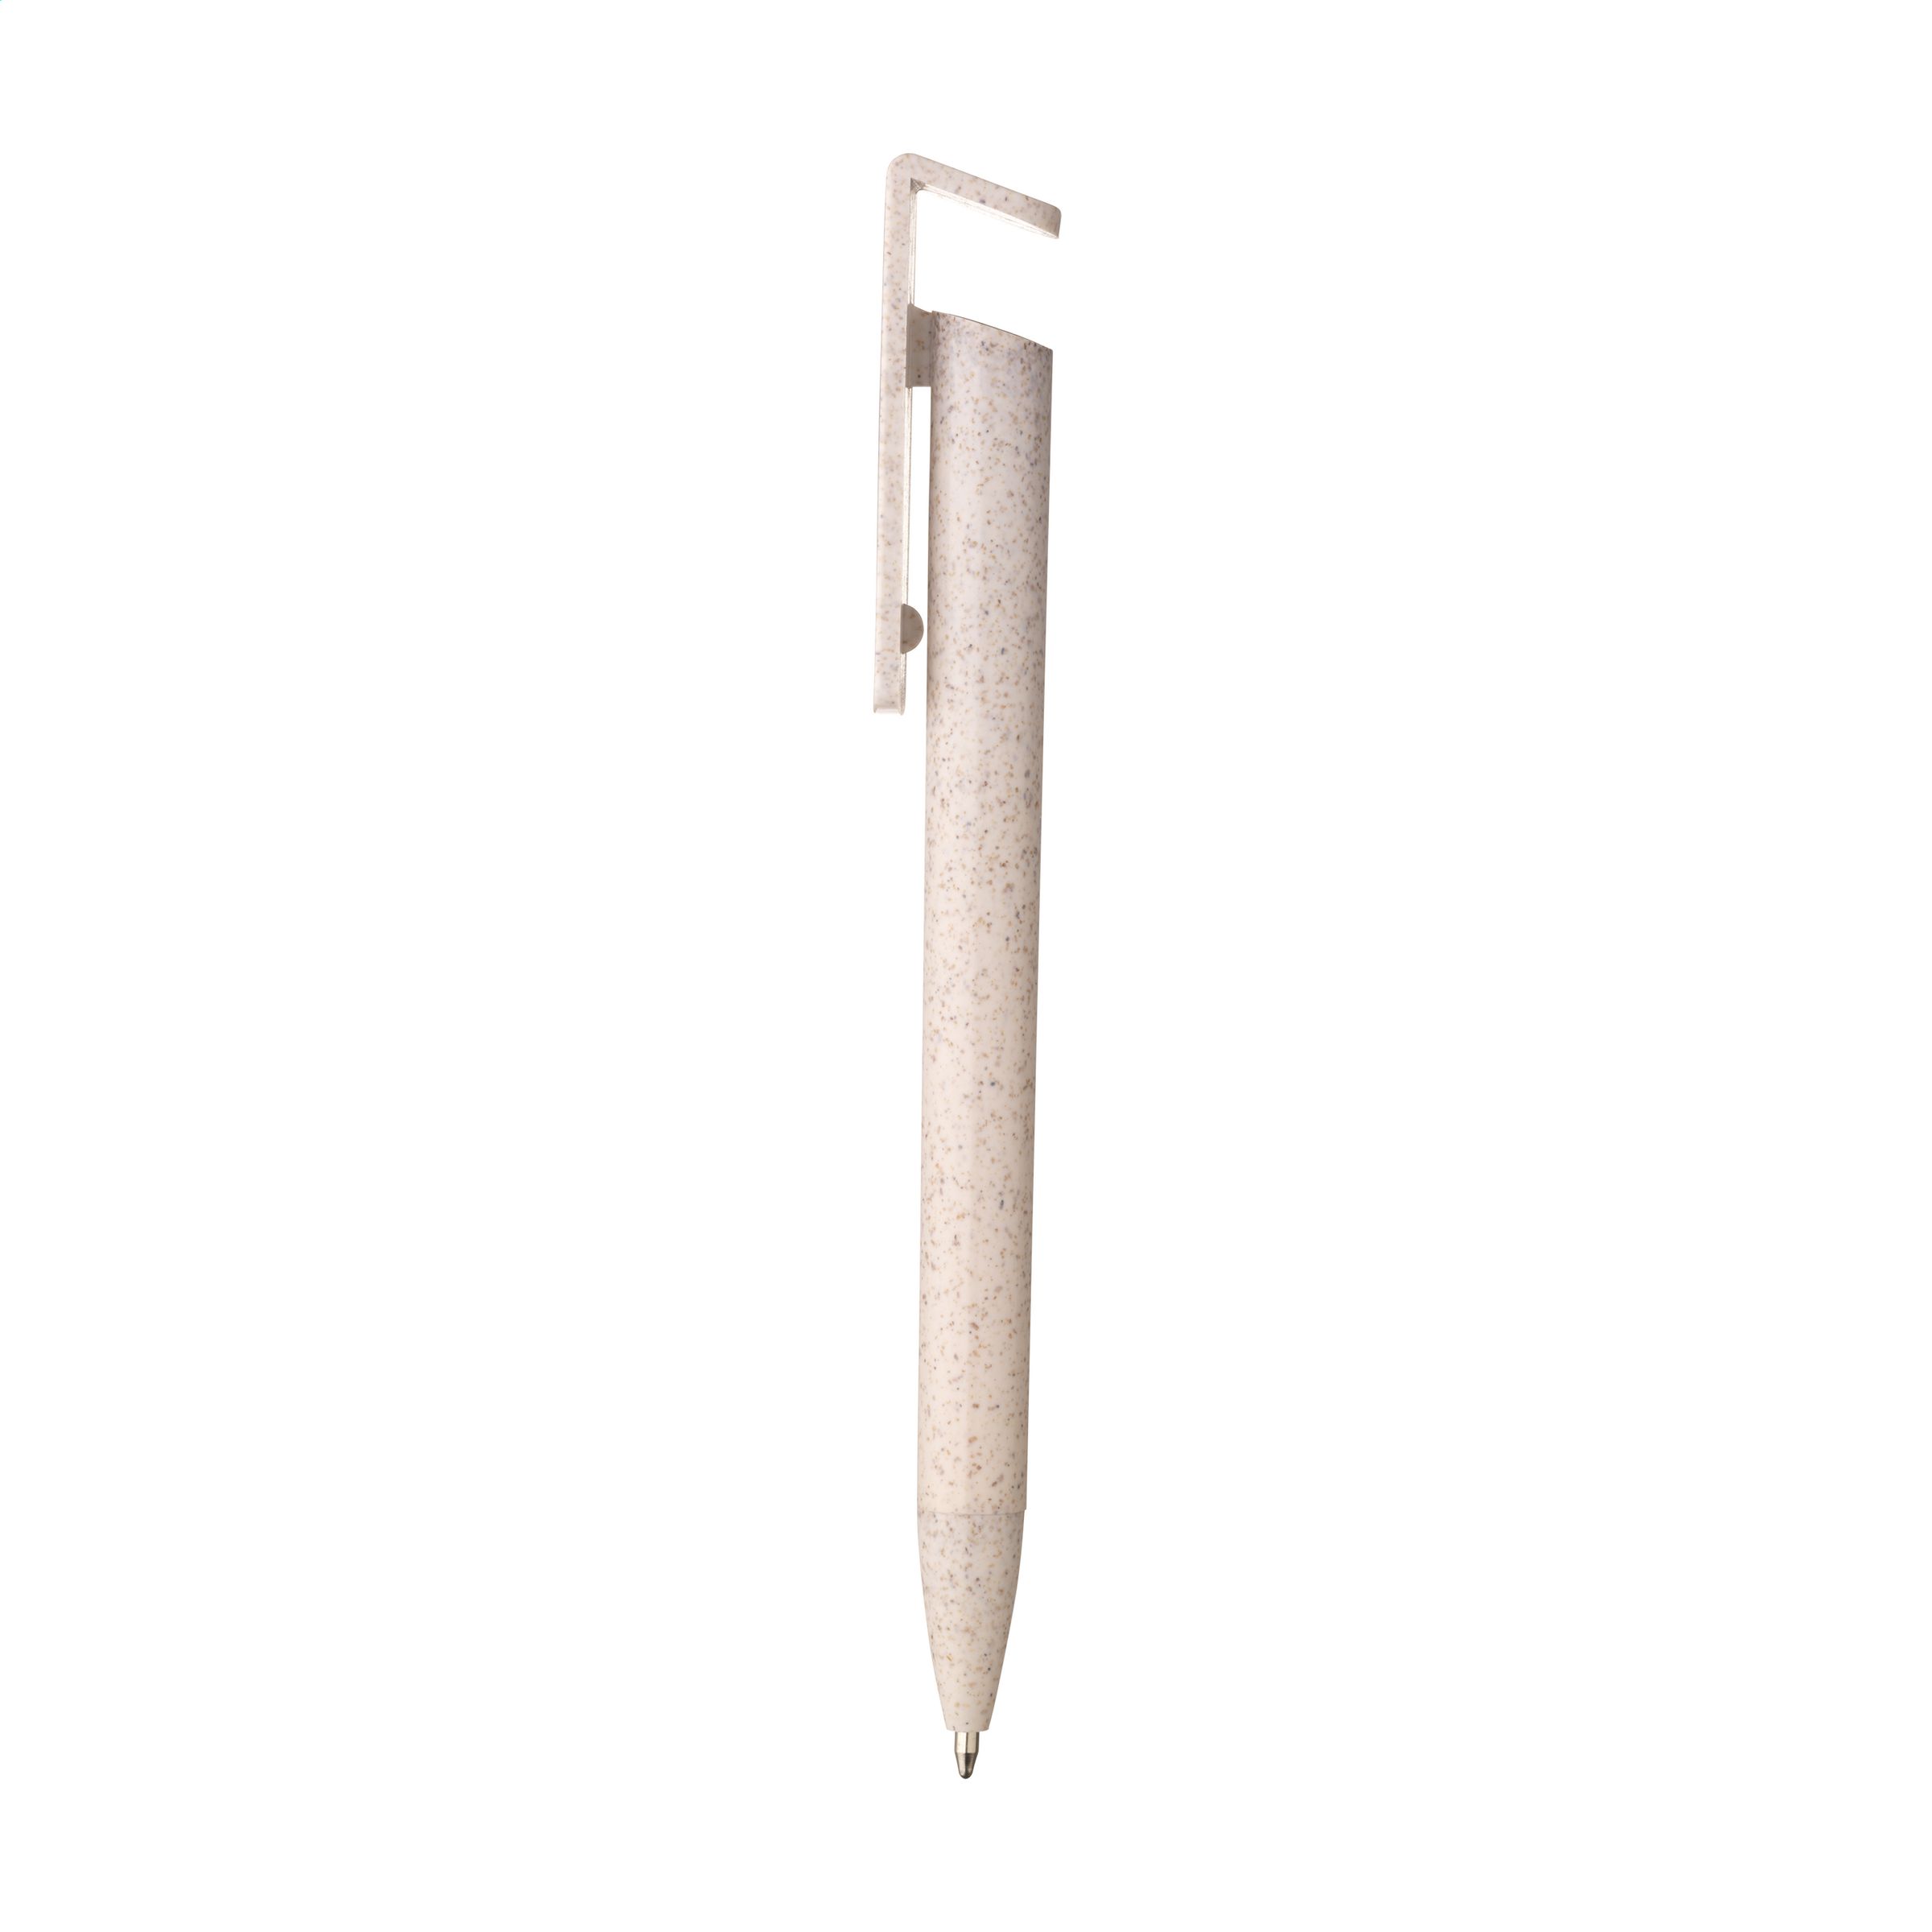 Handy Pen Wheatstraw stylo en paille de blé